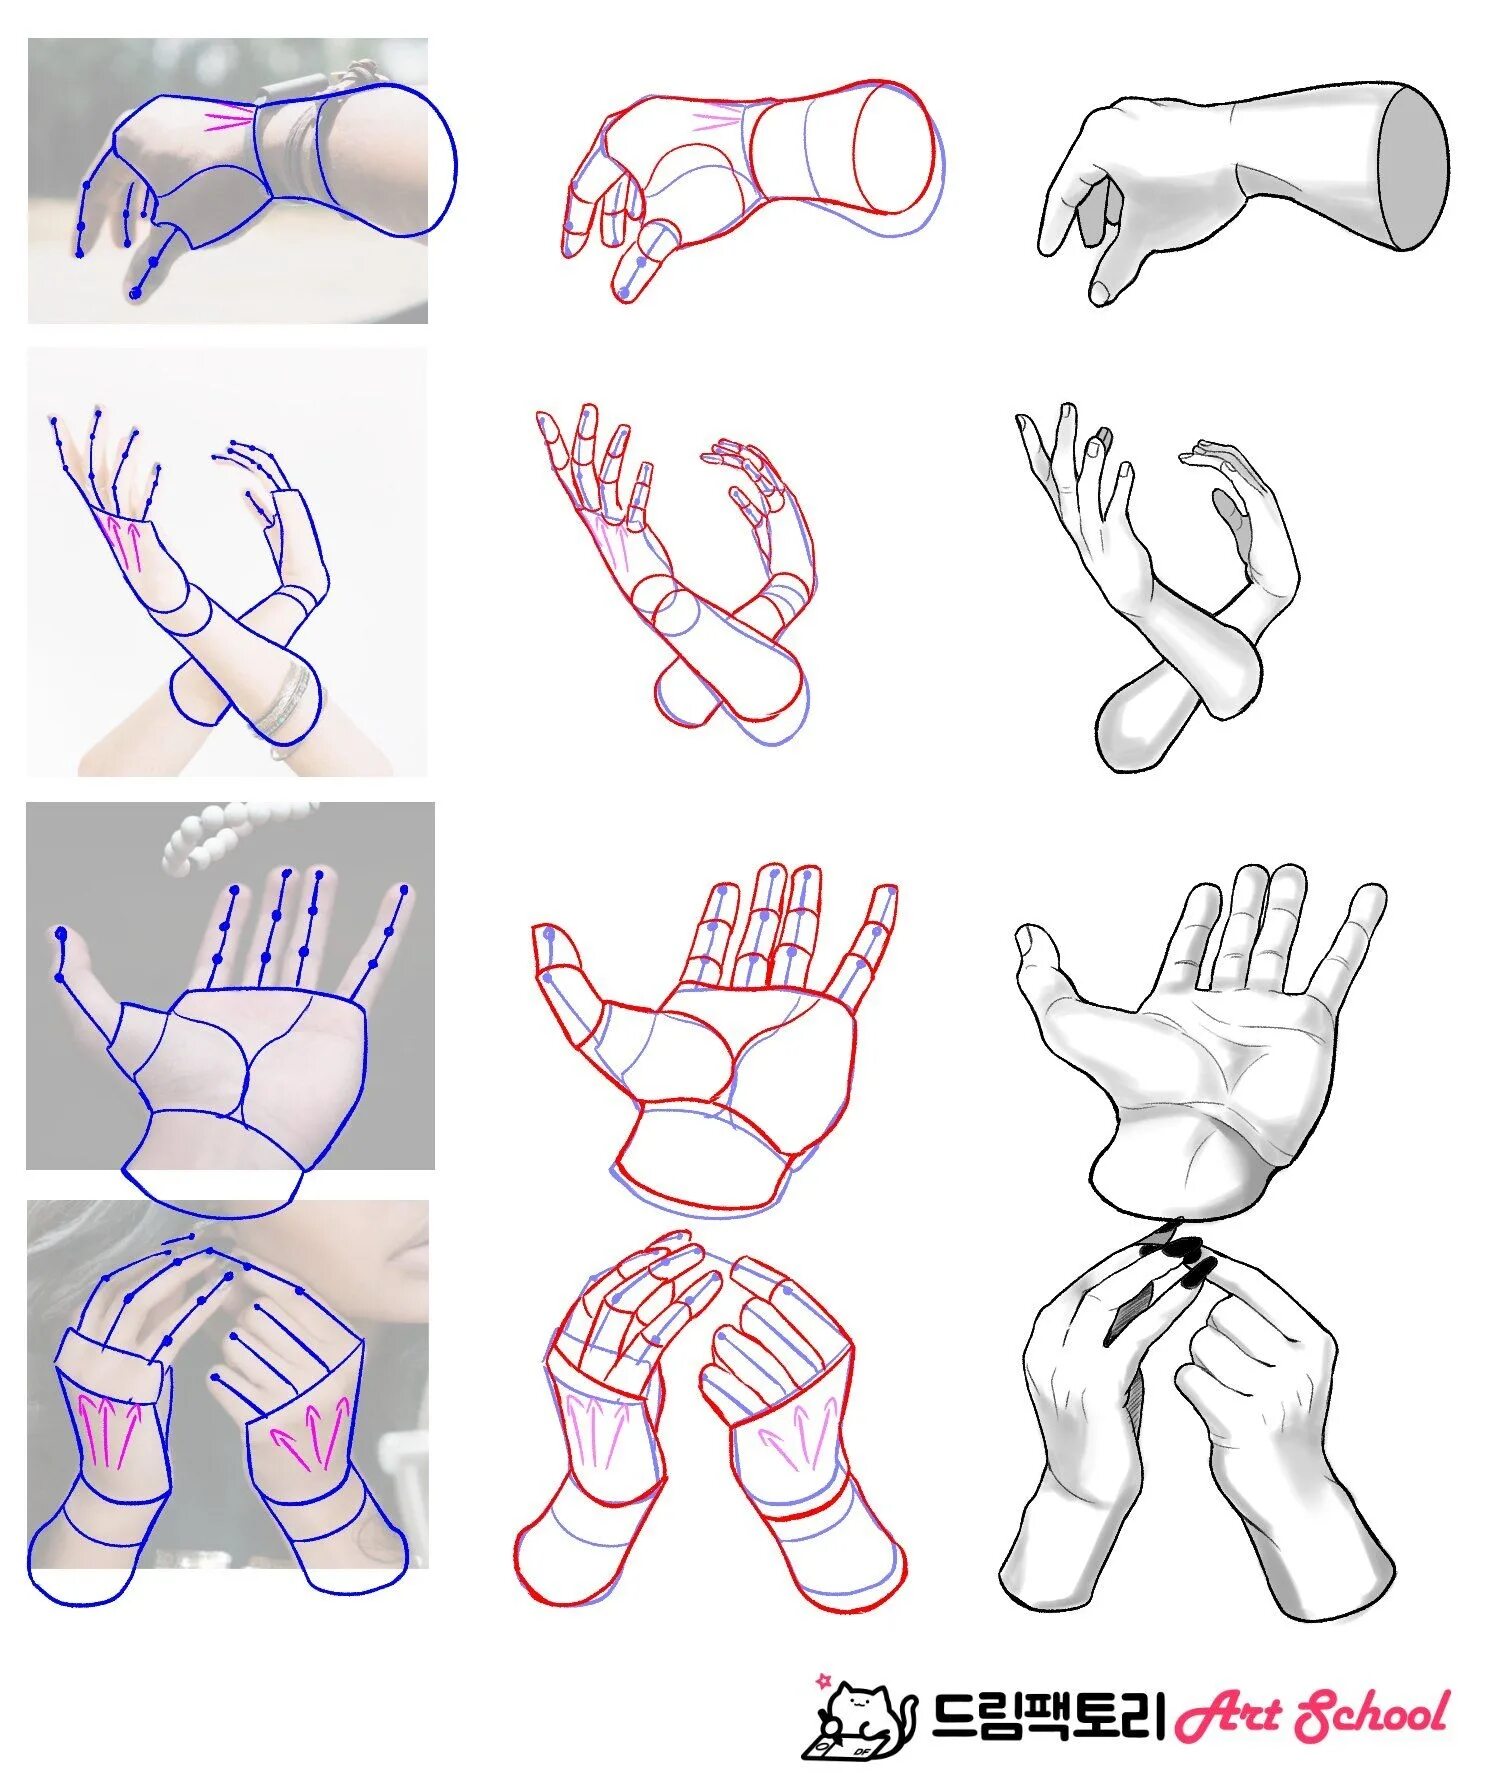 Референс кисти руки поэтапно. Анатомия рук для рисования. Поэтапное рисование рук. Туториал рисования рук.